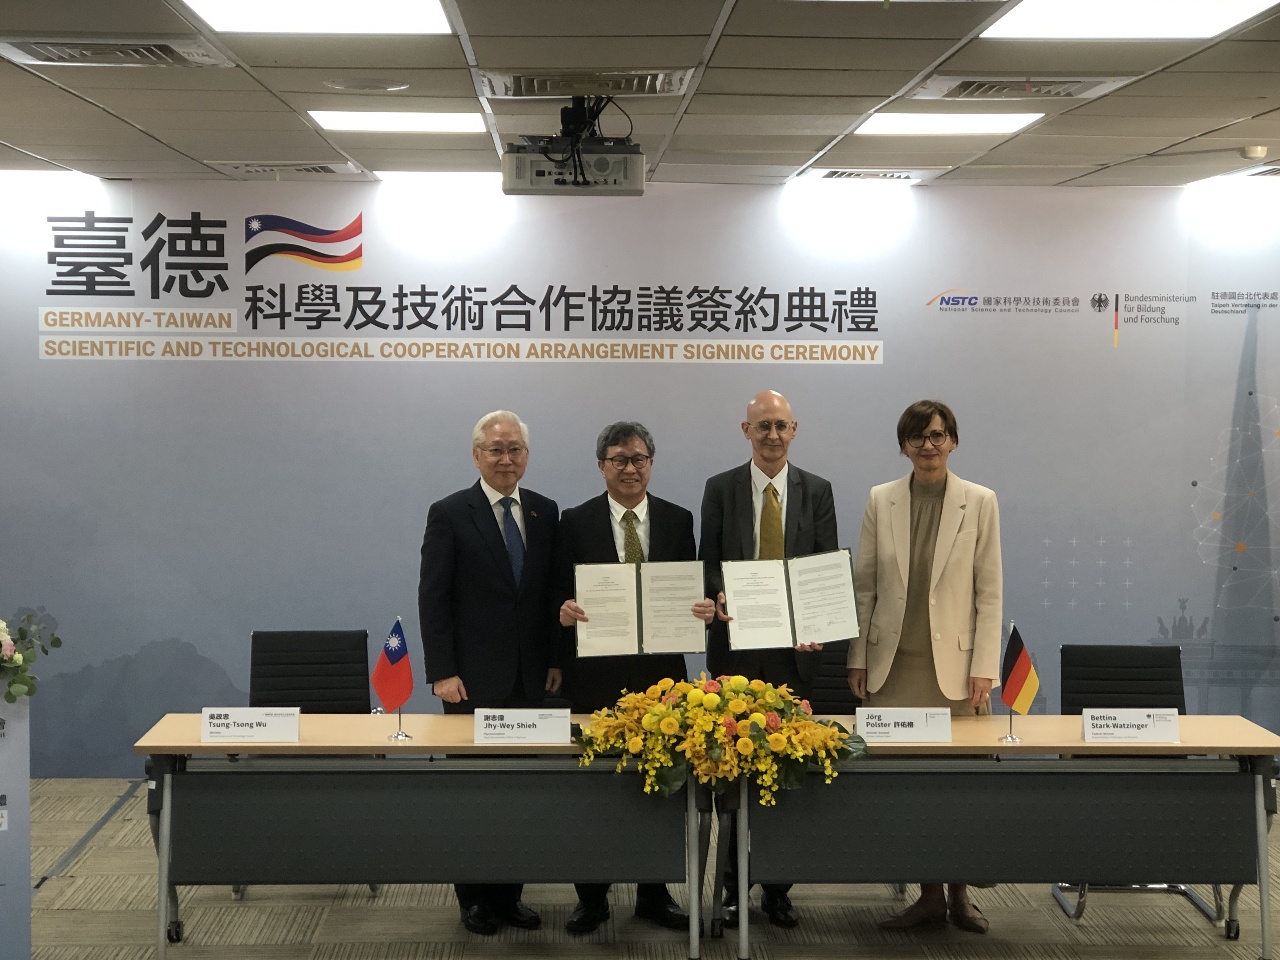 台德簽署科學及技術合作協議 德方強調台灣是志同道合夥伴